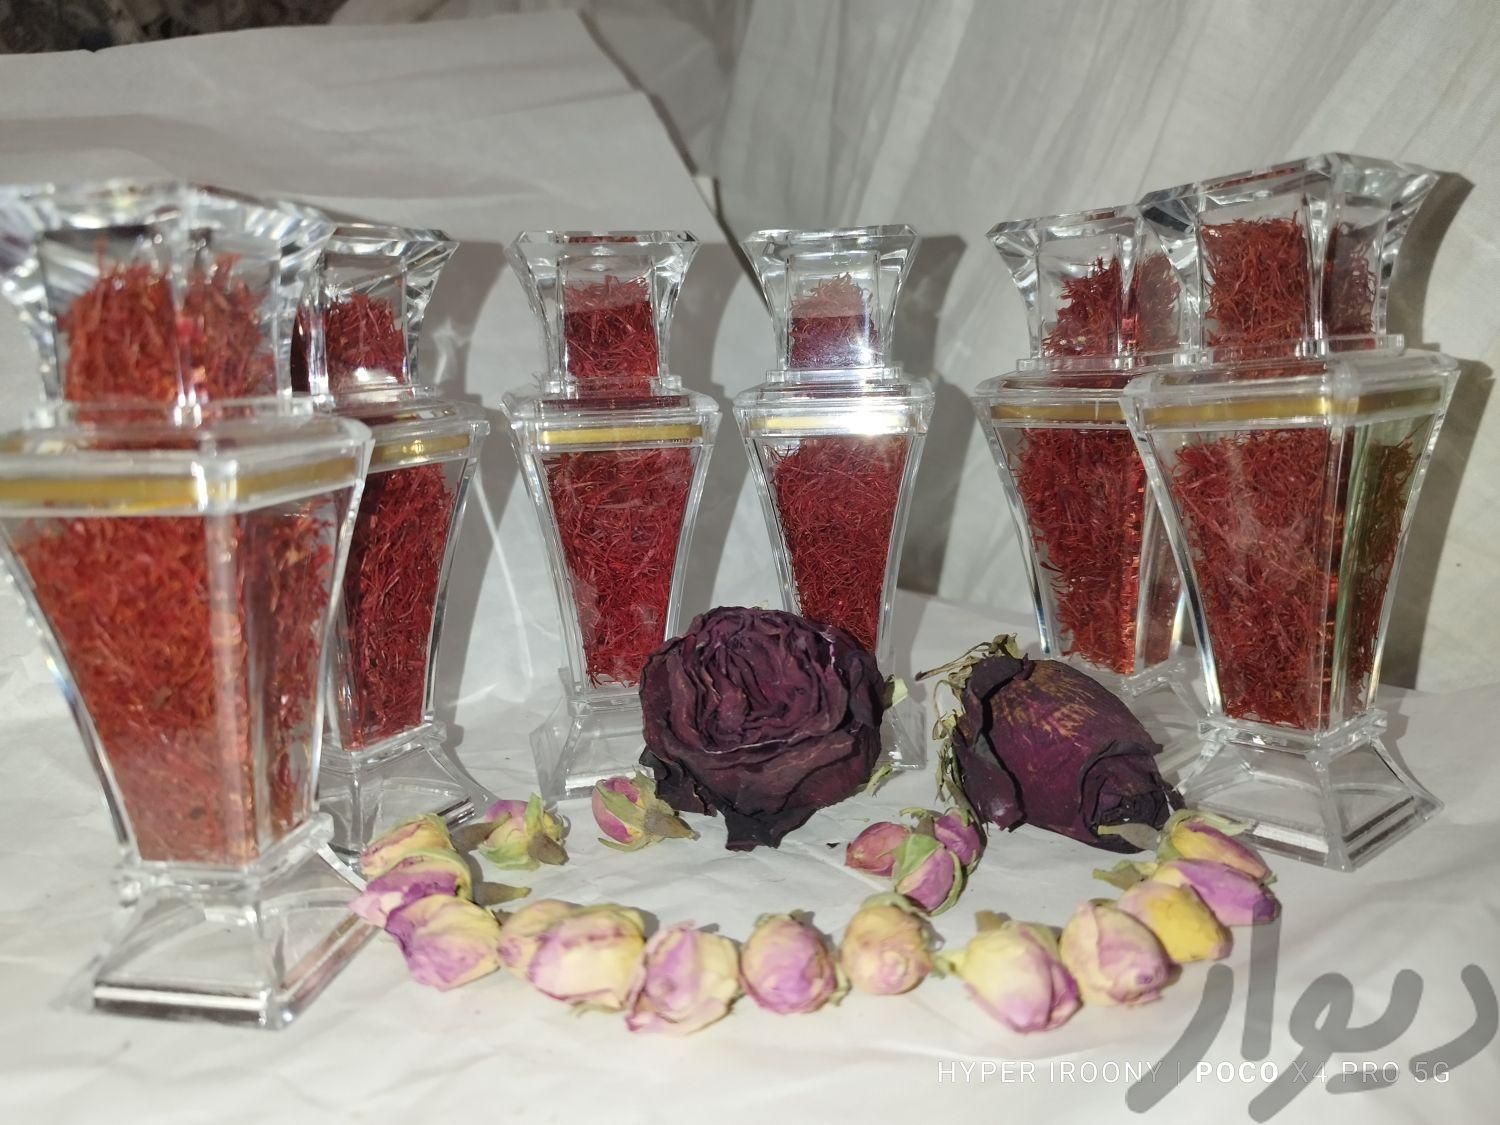 زعفران ایرونی سرگل نگینی گرمی ۶۰  قیمت عمده ۲۵۰|خوردنی و آشامیدنی|مشهد, احمدآباد|دیوار